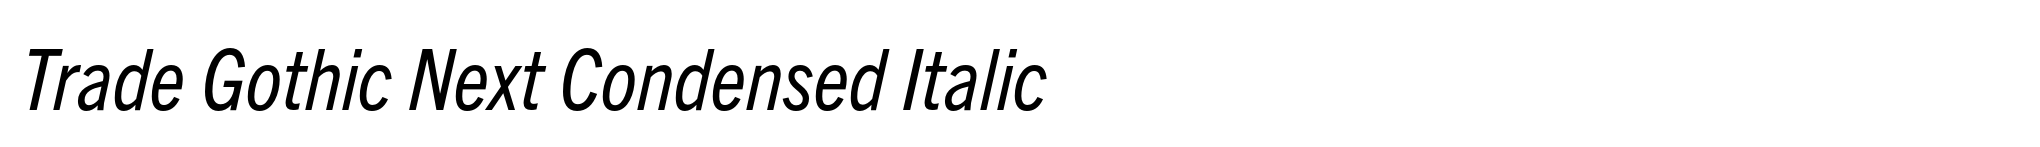 Trade Gothic Next Condensed Italic image